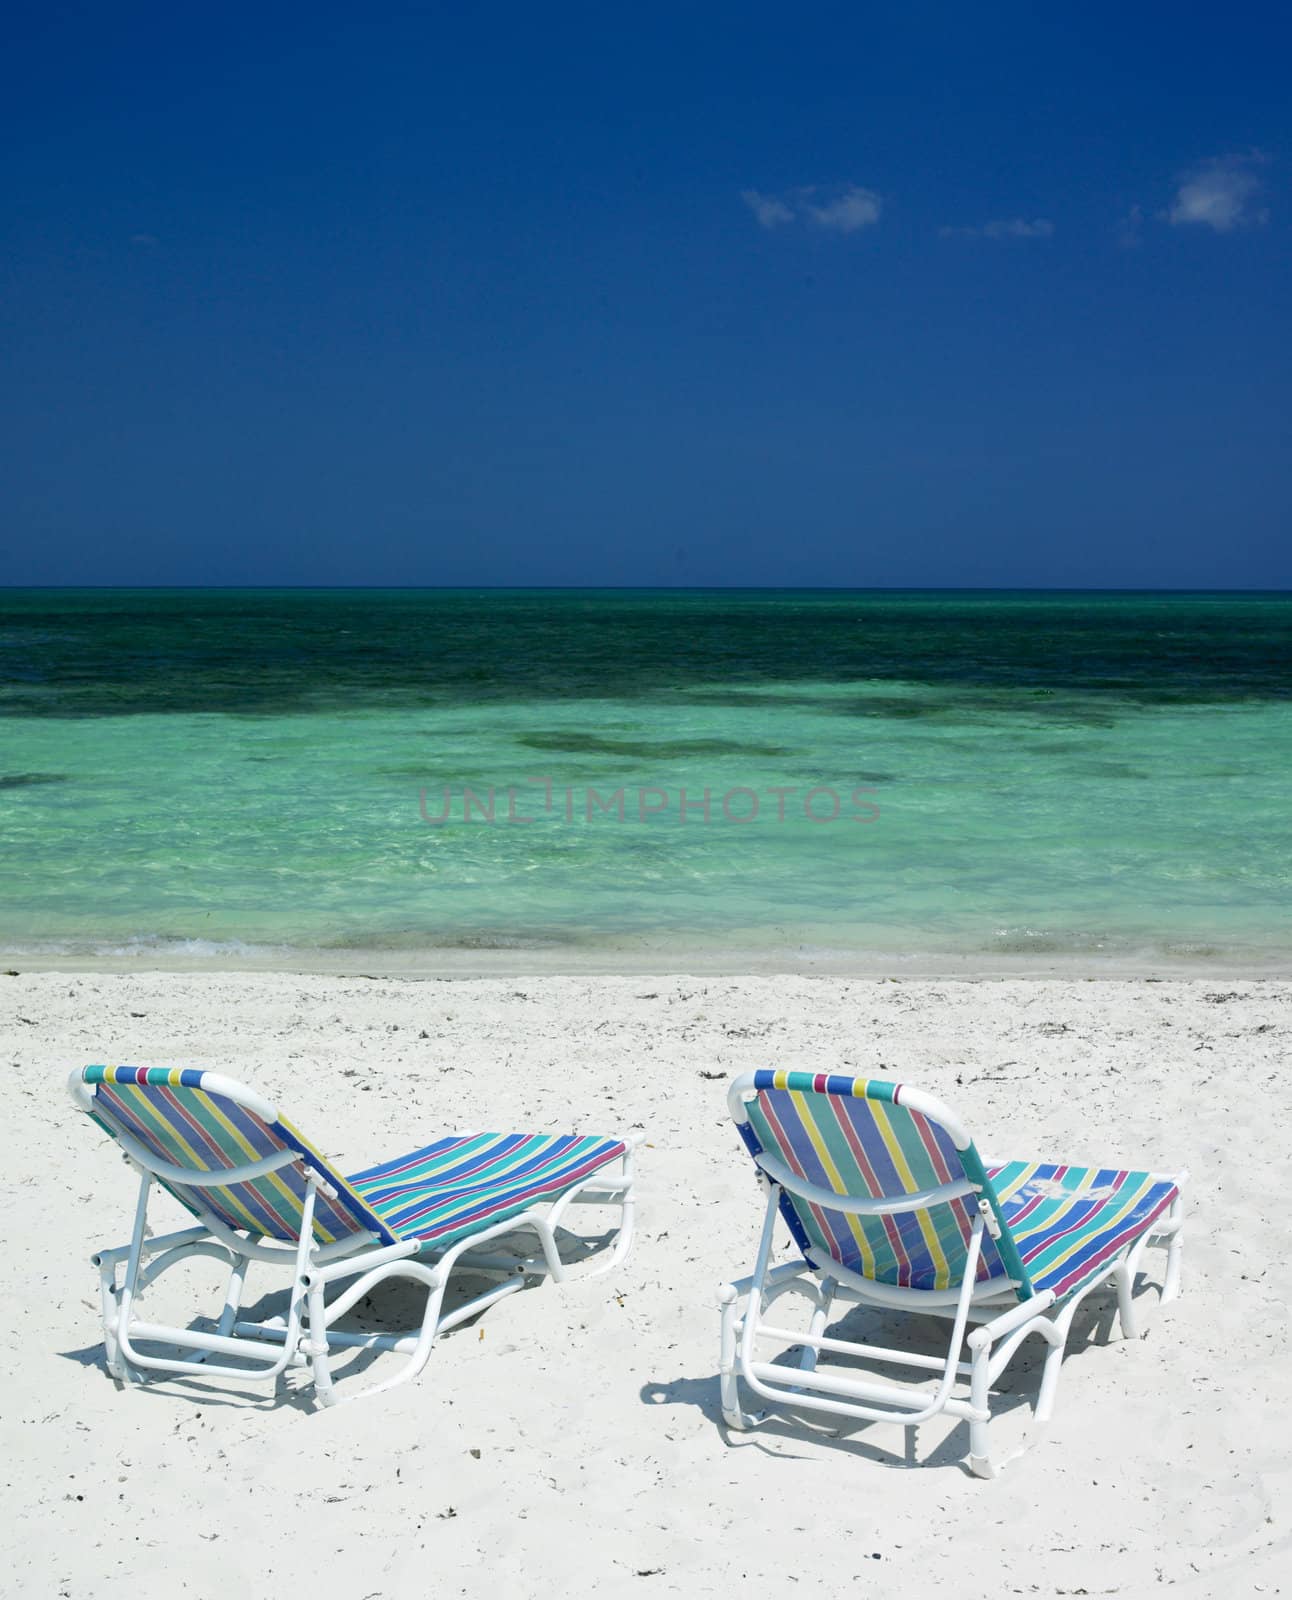 Santa Lucia beach, Camaguey Province, Cuba by phbcz